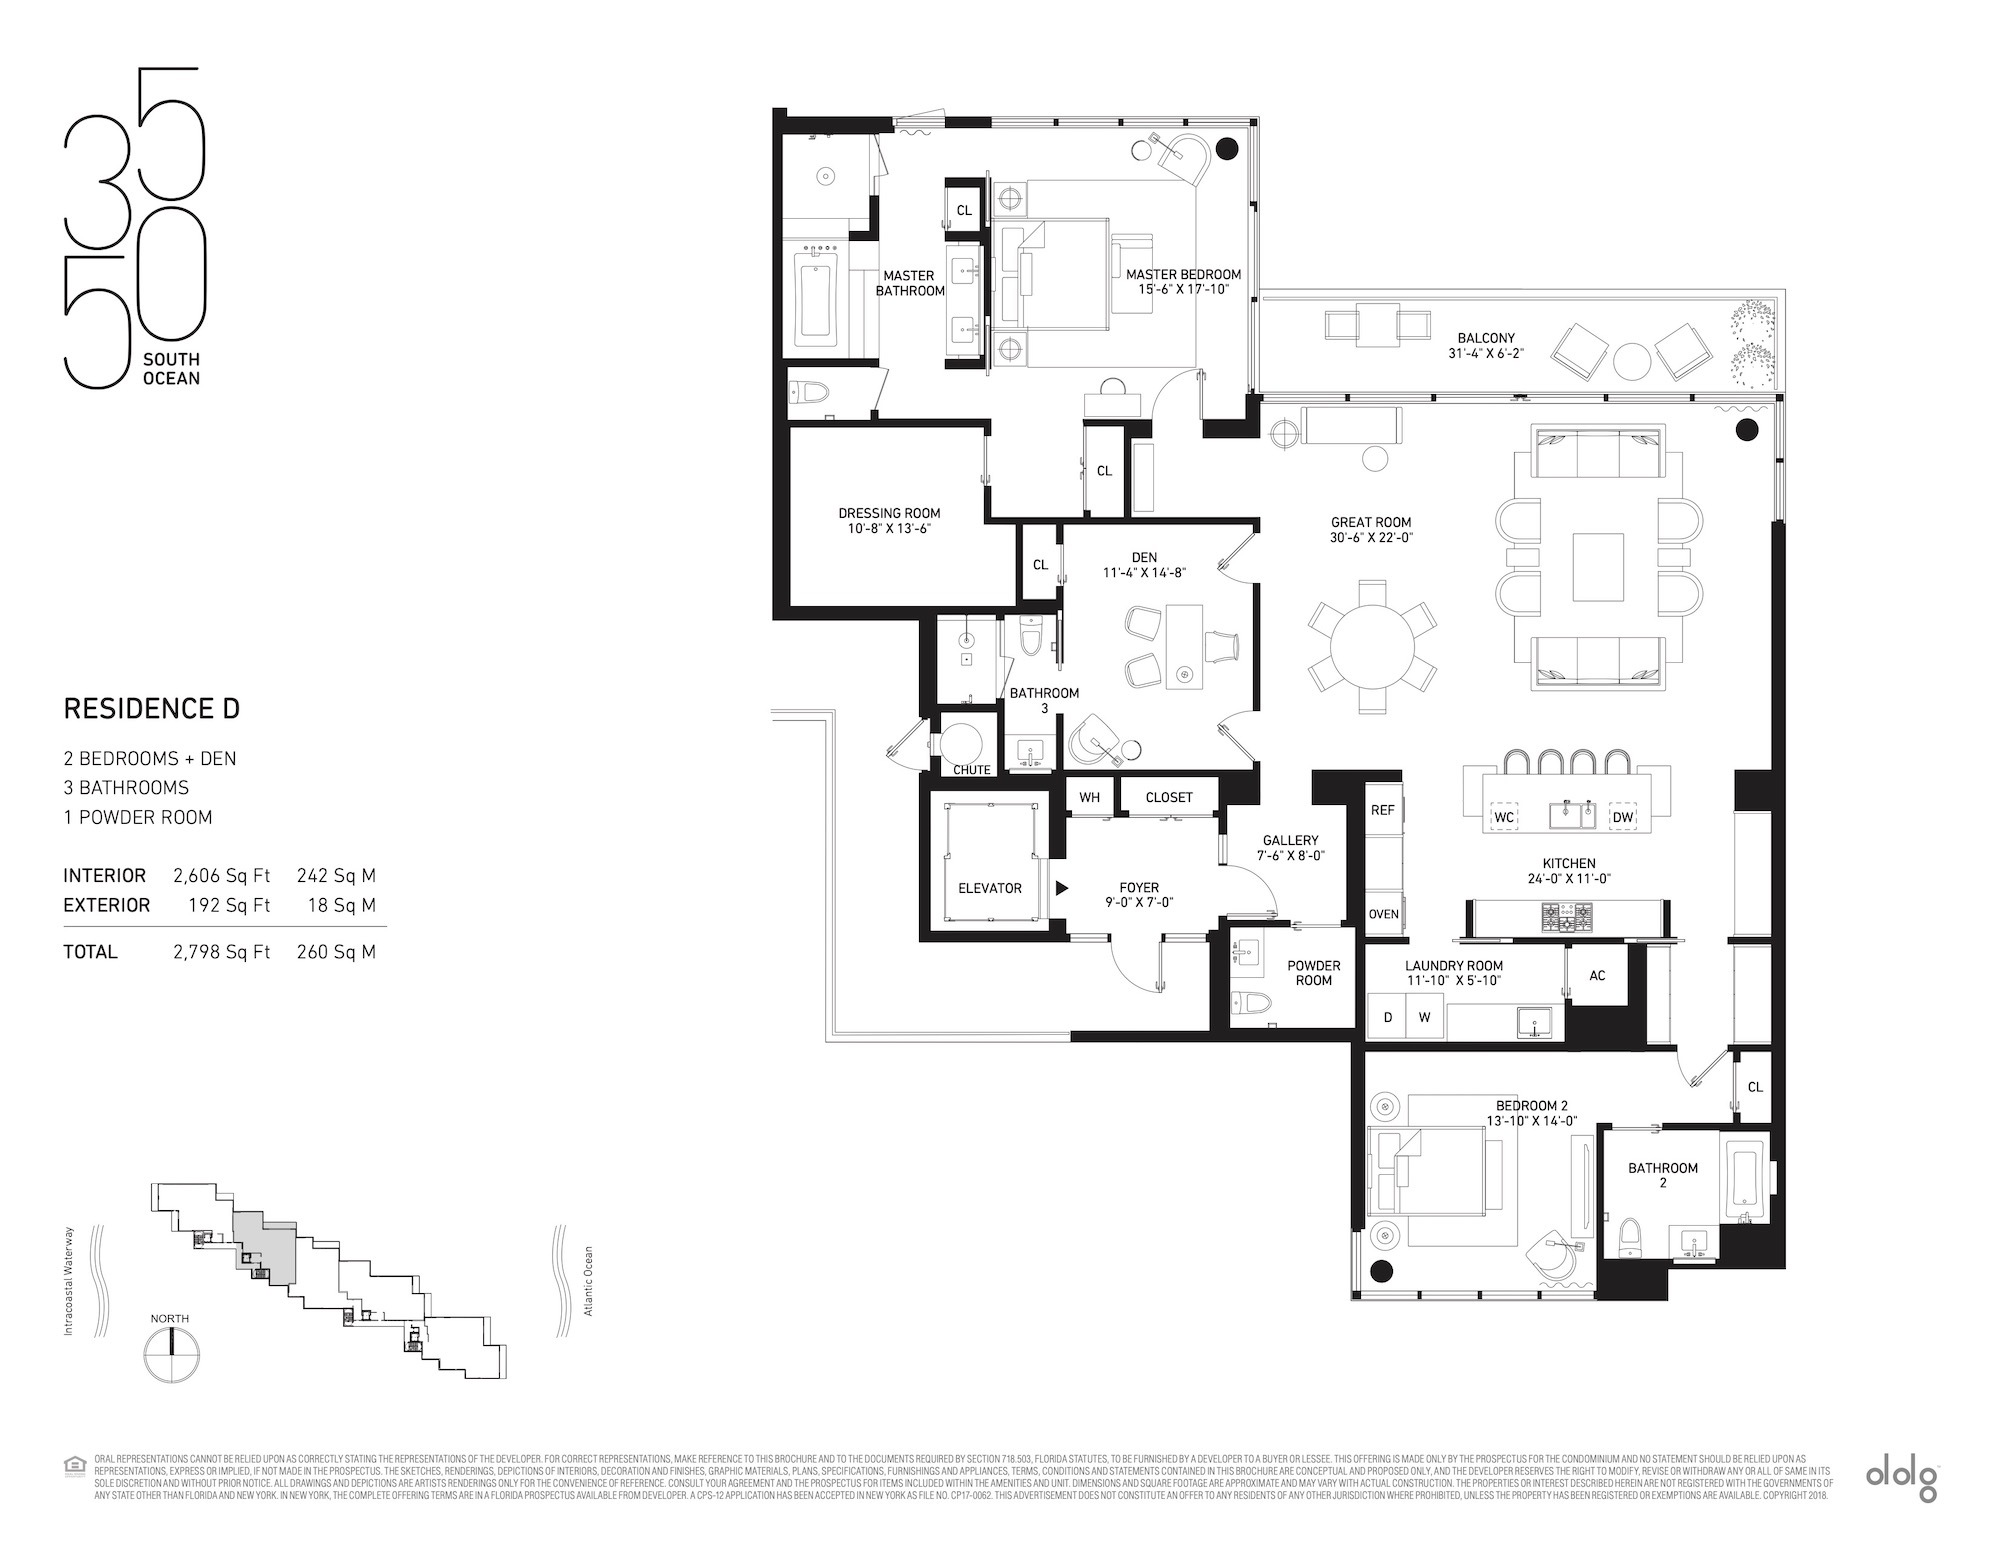 Floor Plan for 3550 South Ocean Floorplans, Residence D